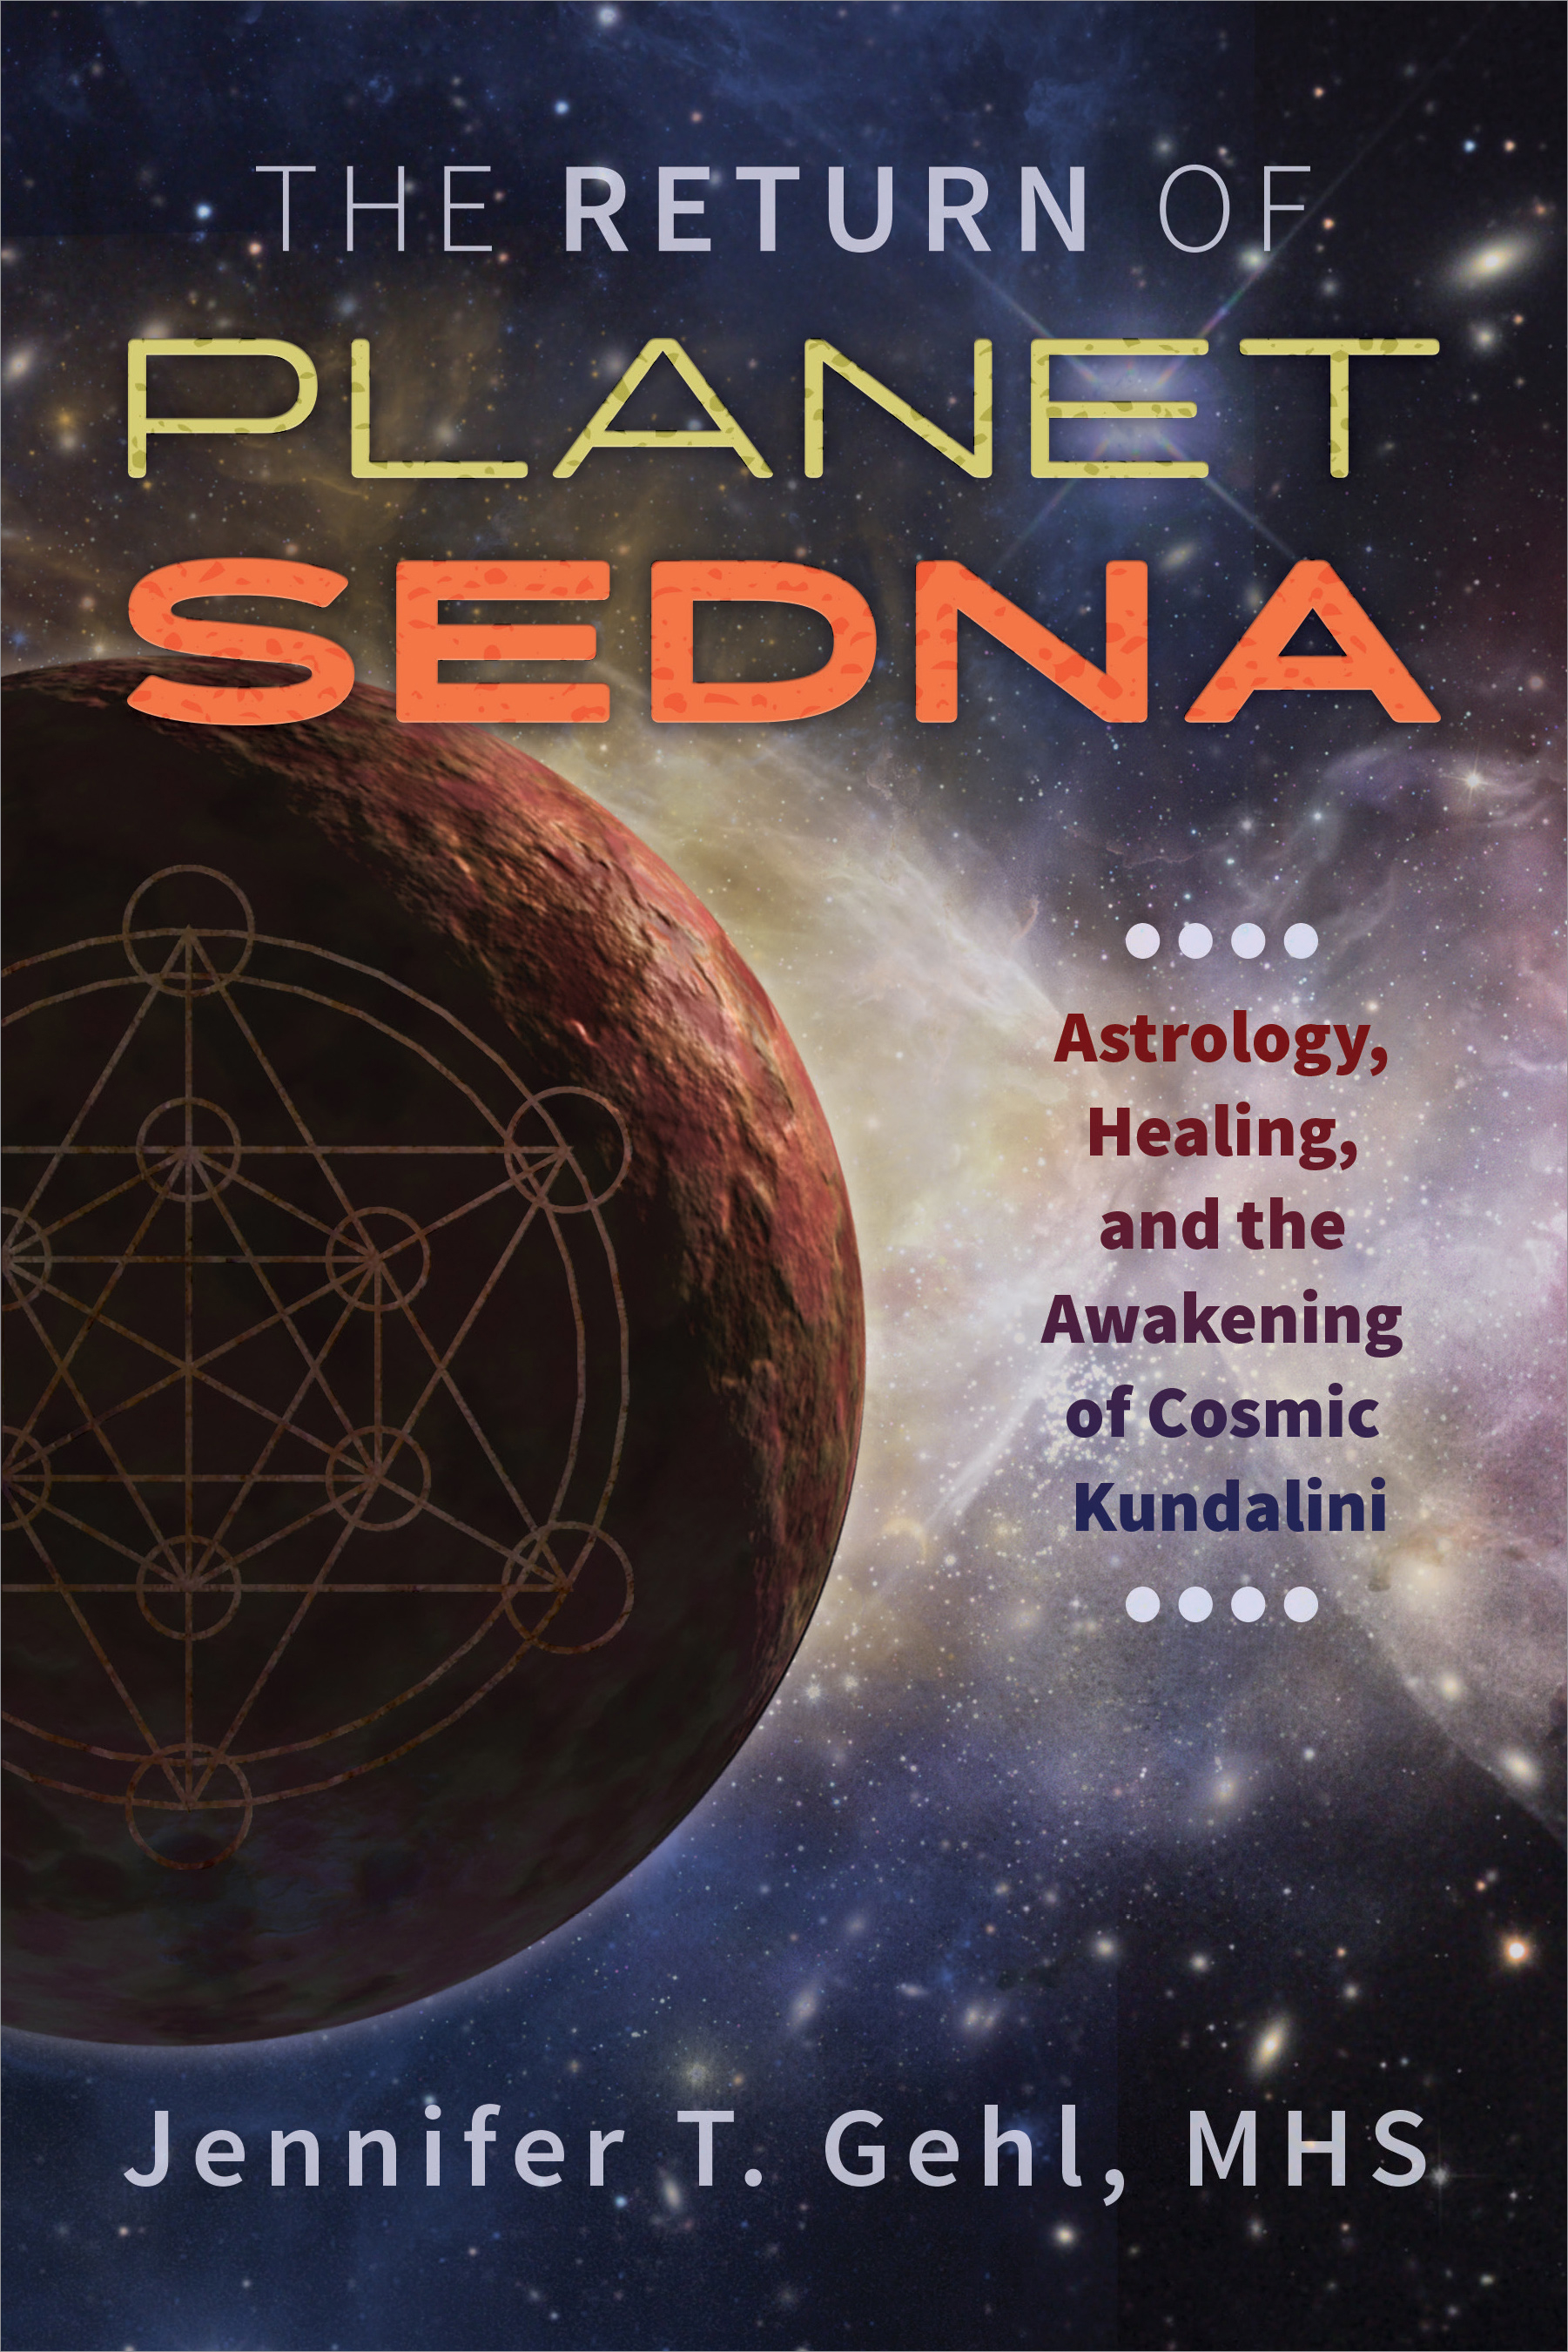 The Return of Planet Sedna